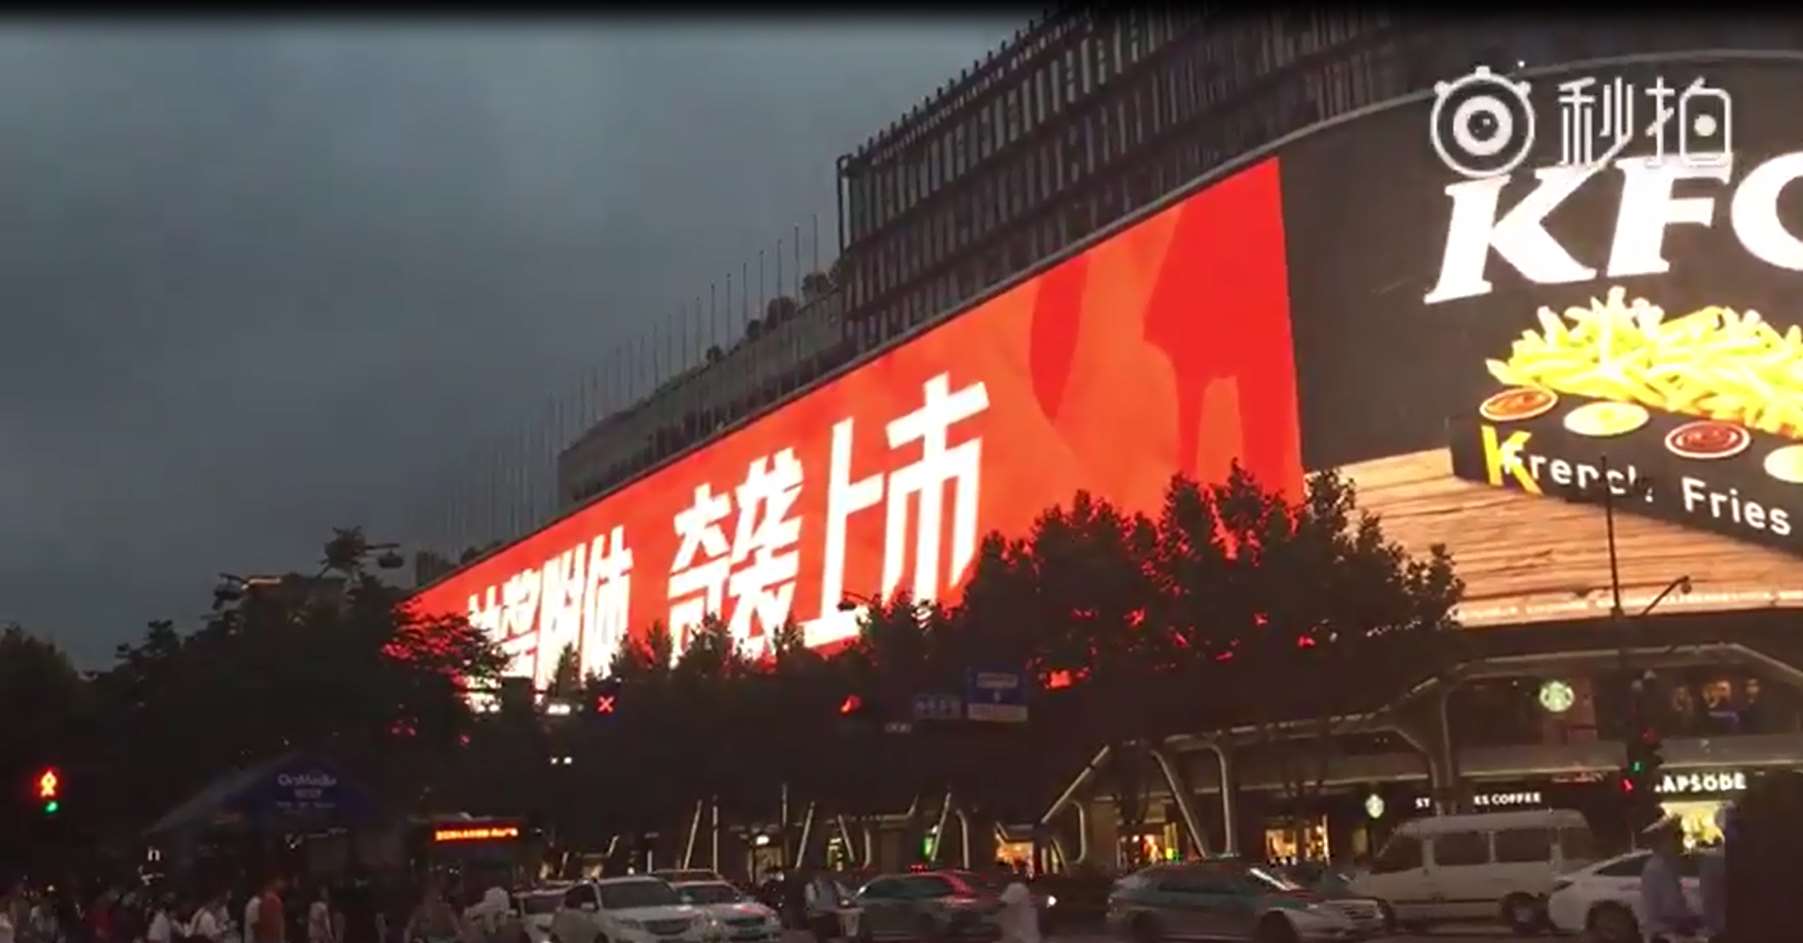 杭州工联大厦LED广告案例